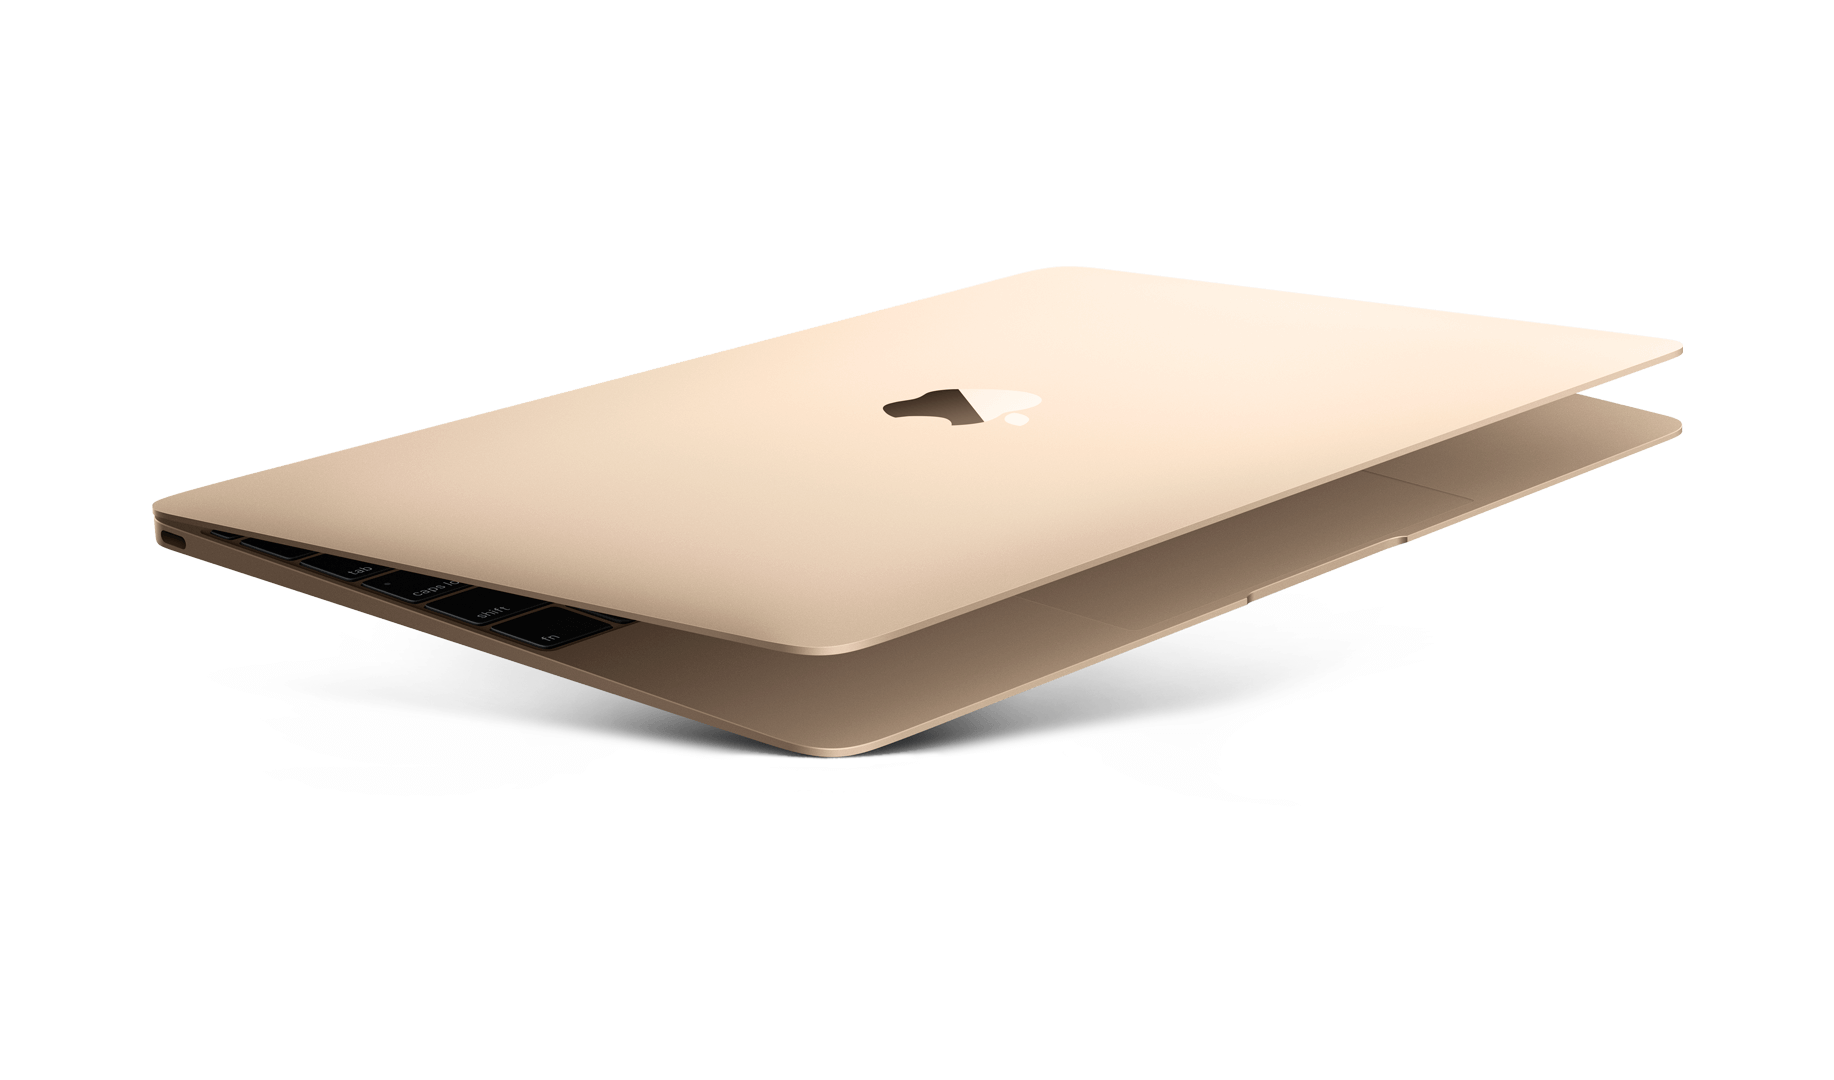 Toegeven lastig vervorming Op zoek naar een MacBook Goud? Vergelijk alle prijzen en specificaties!